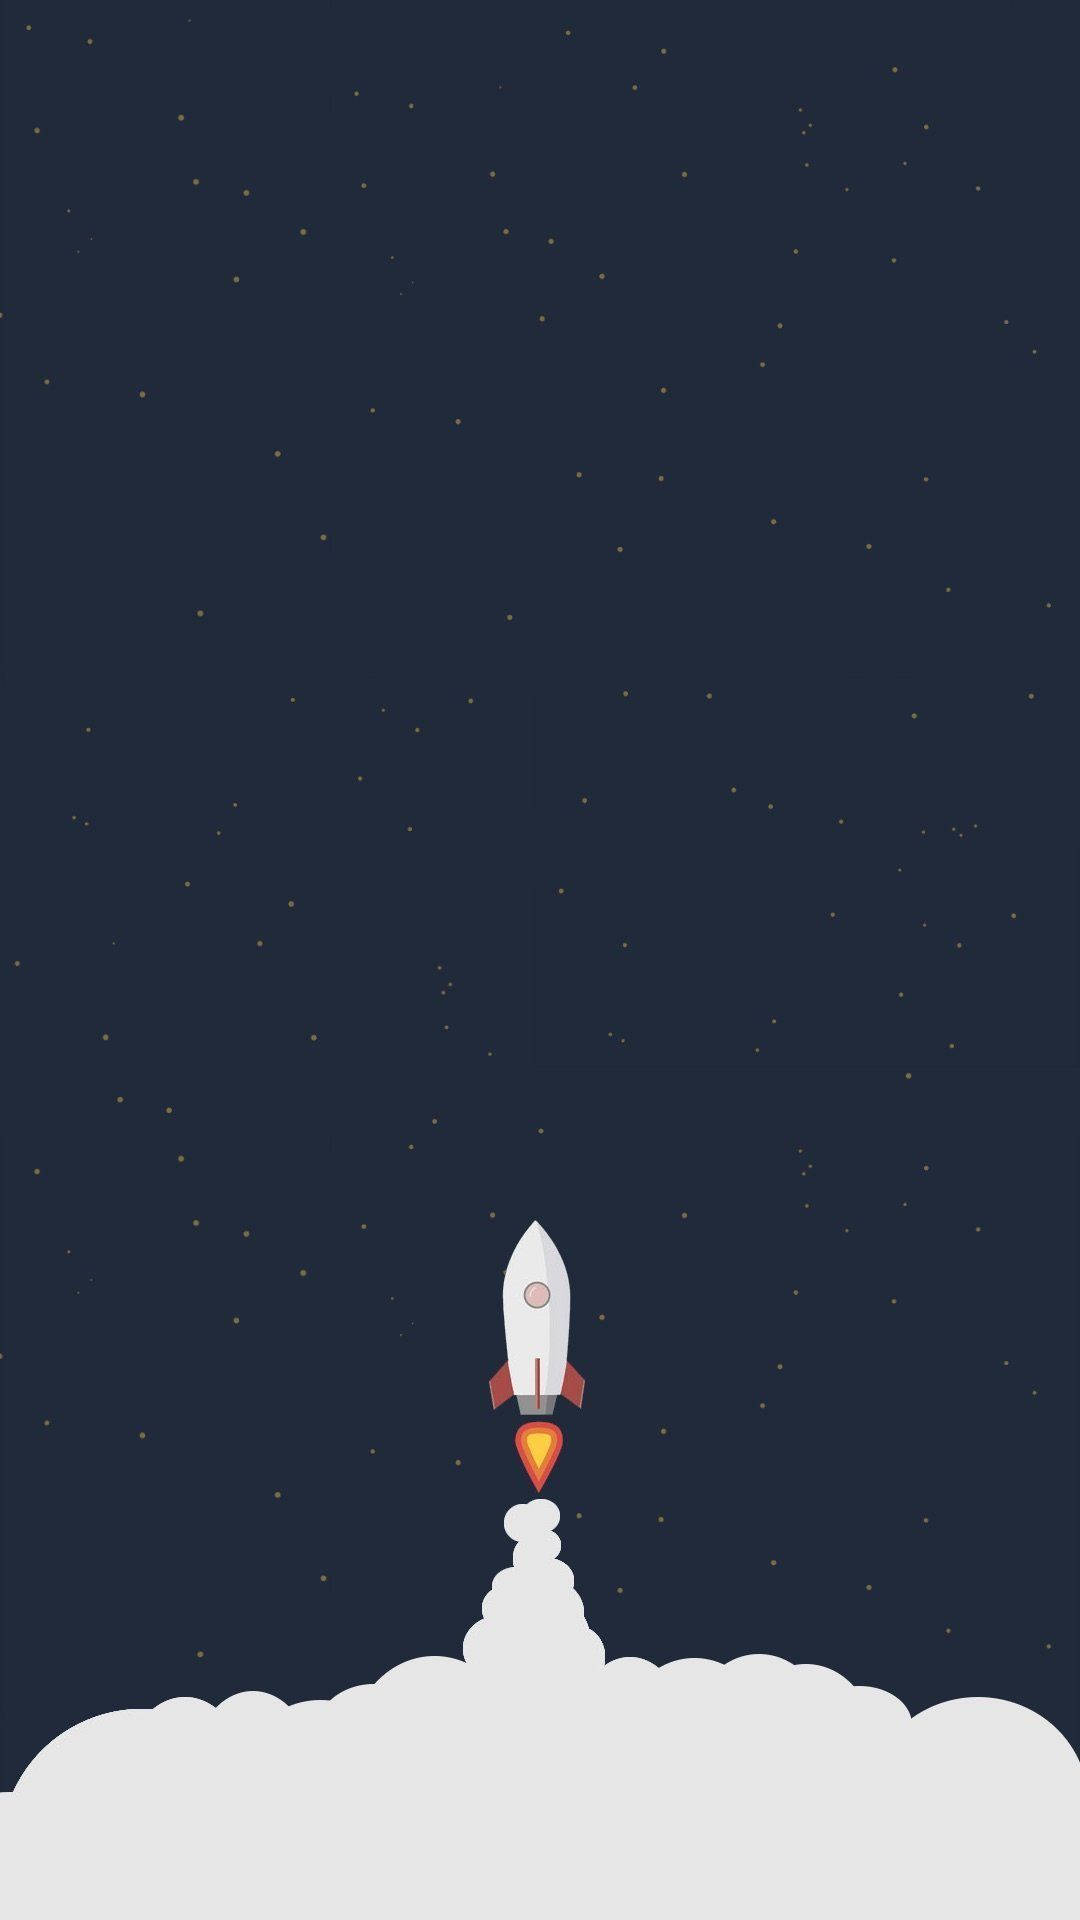 Rocket Taking Off Illustration Background